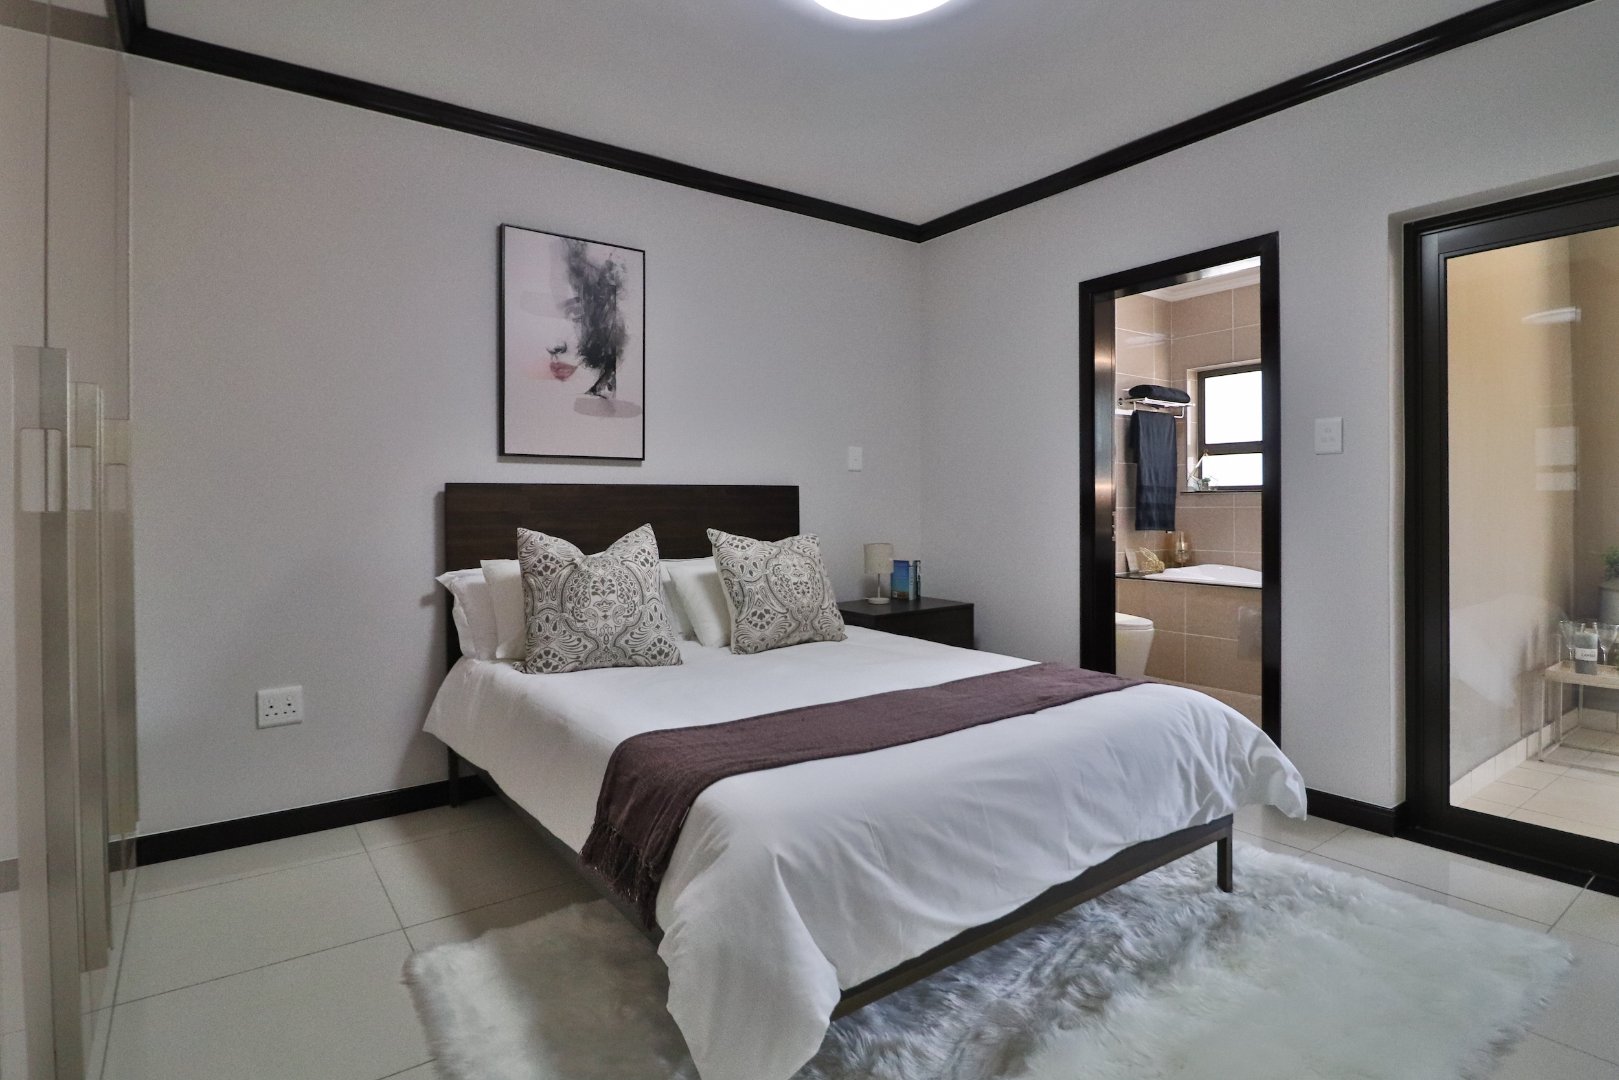 1 Bedroom Property for Sale in Kengies Gauteng